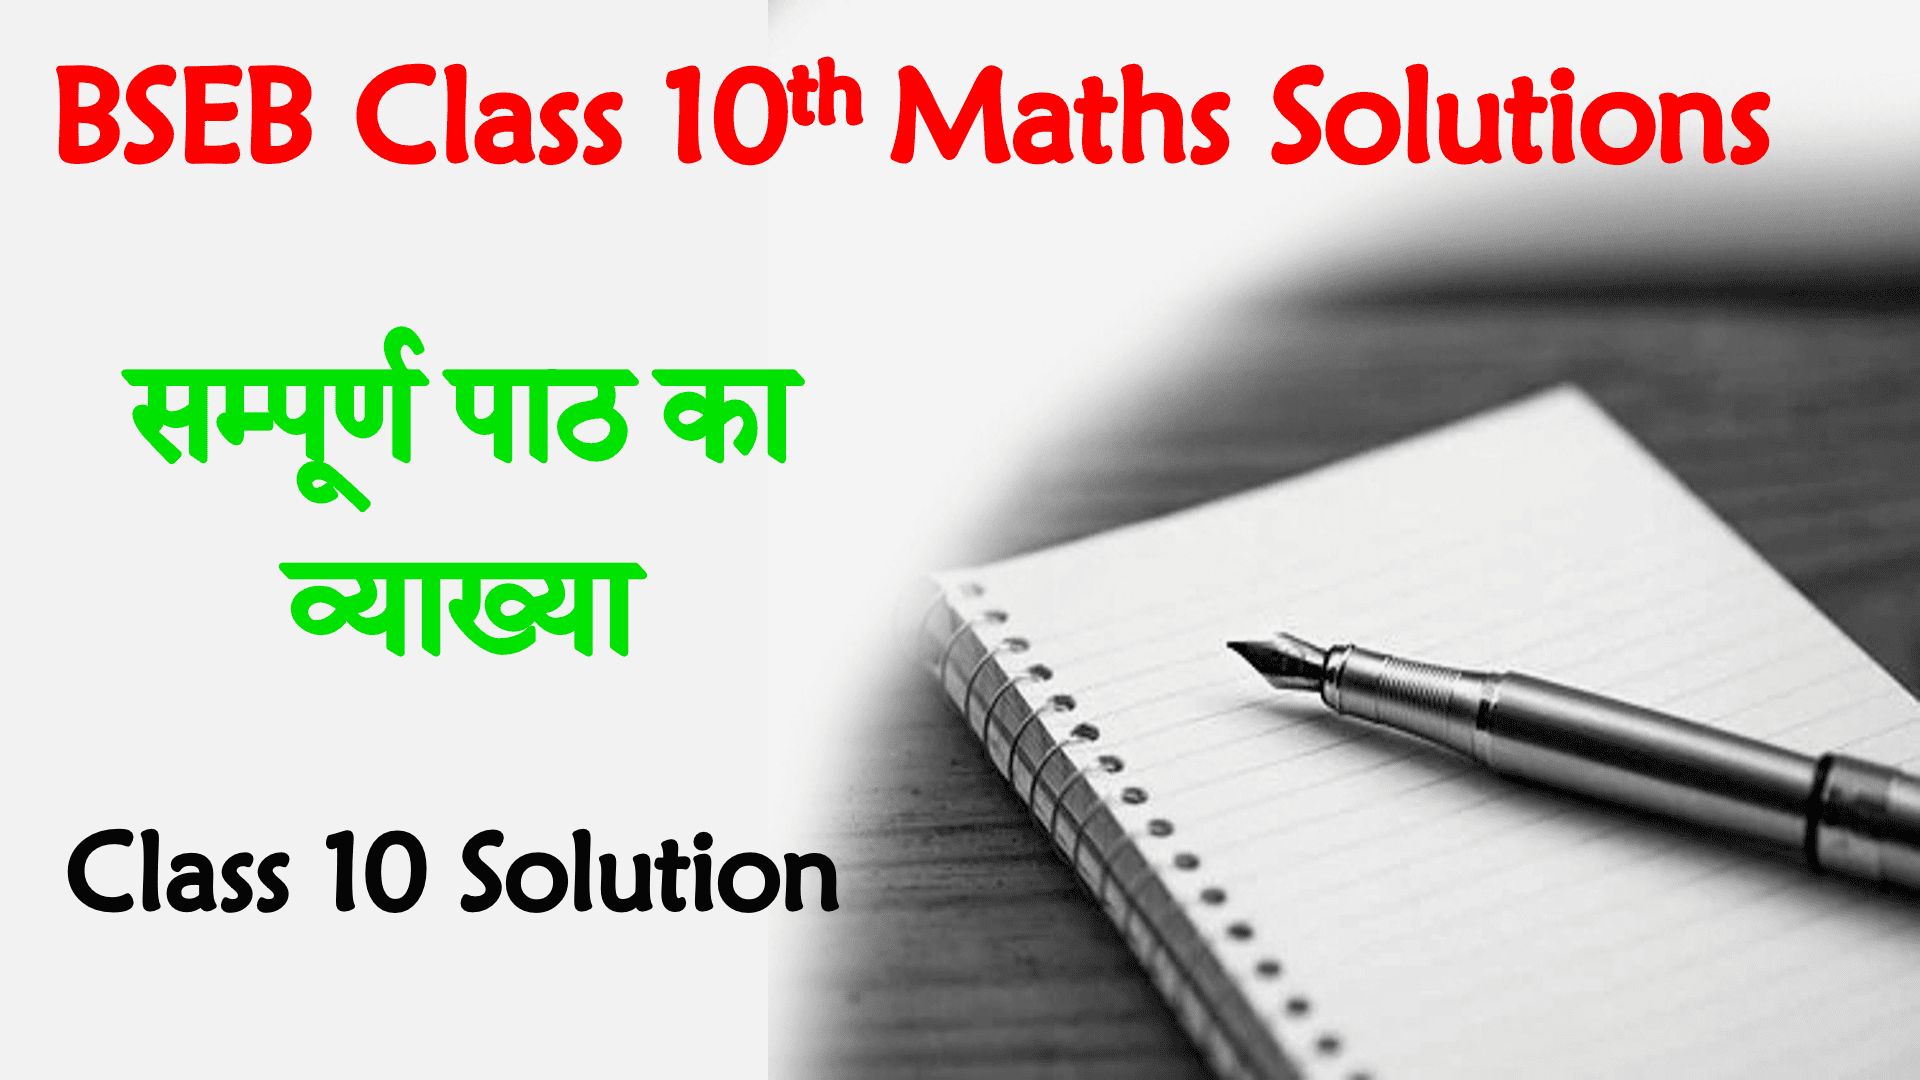 Bihar Board Maths Class 10th Solution in Hindi